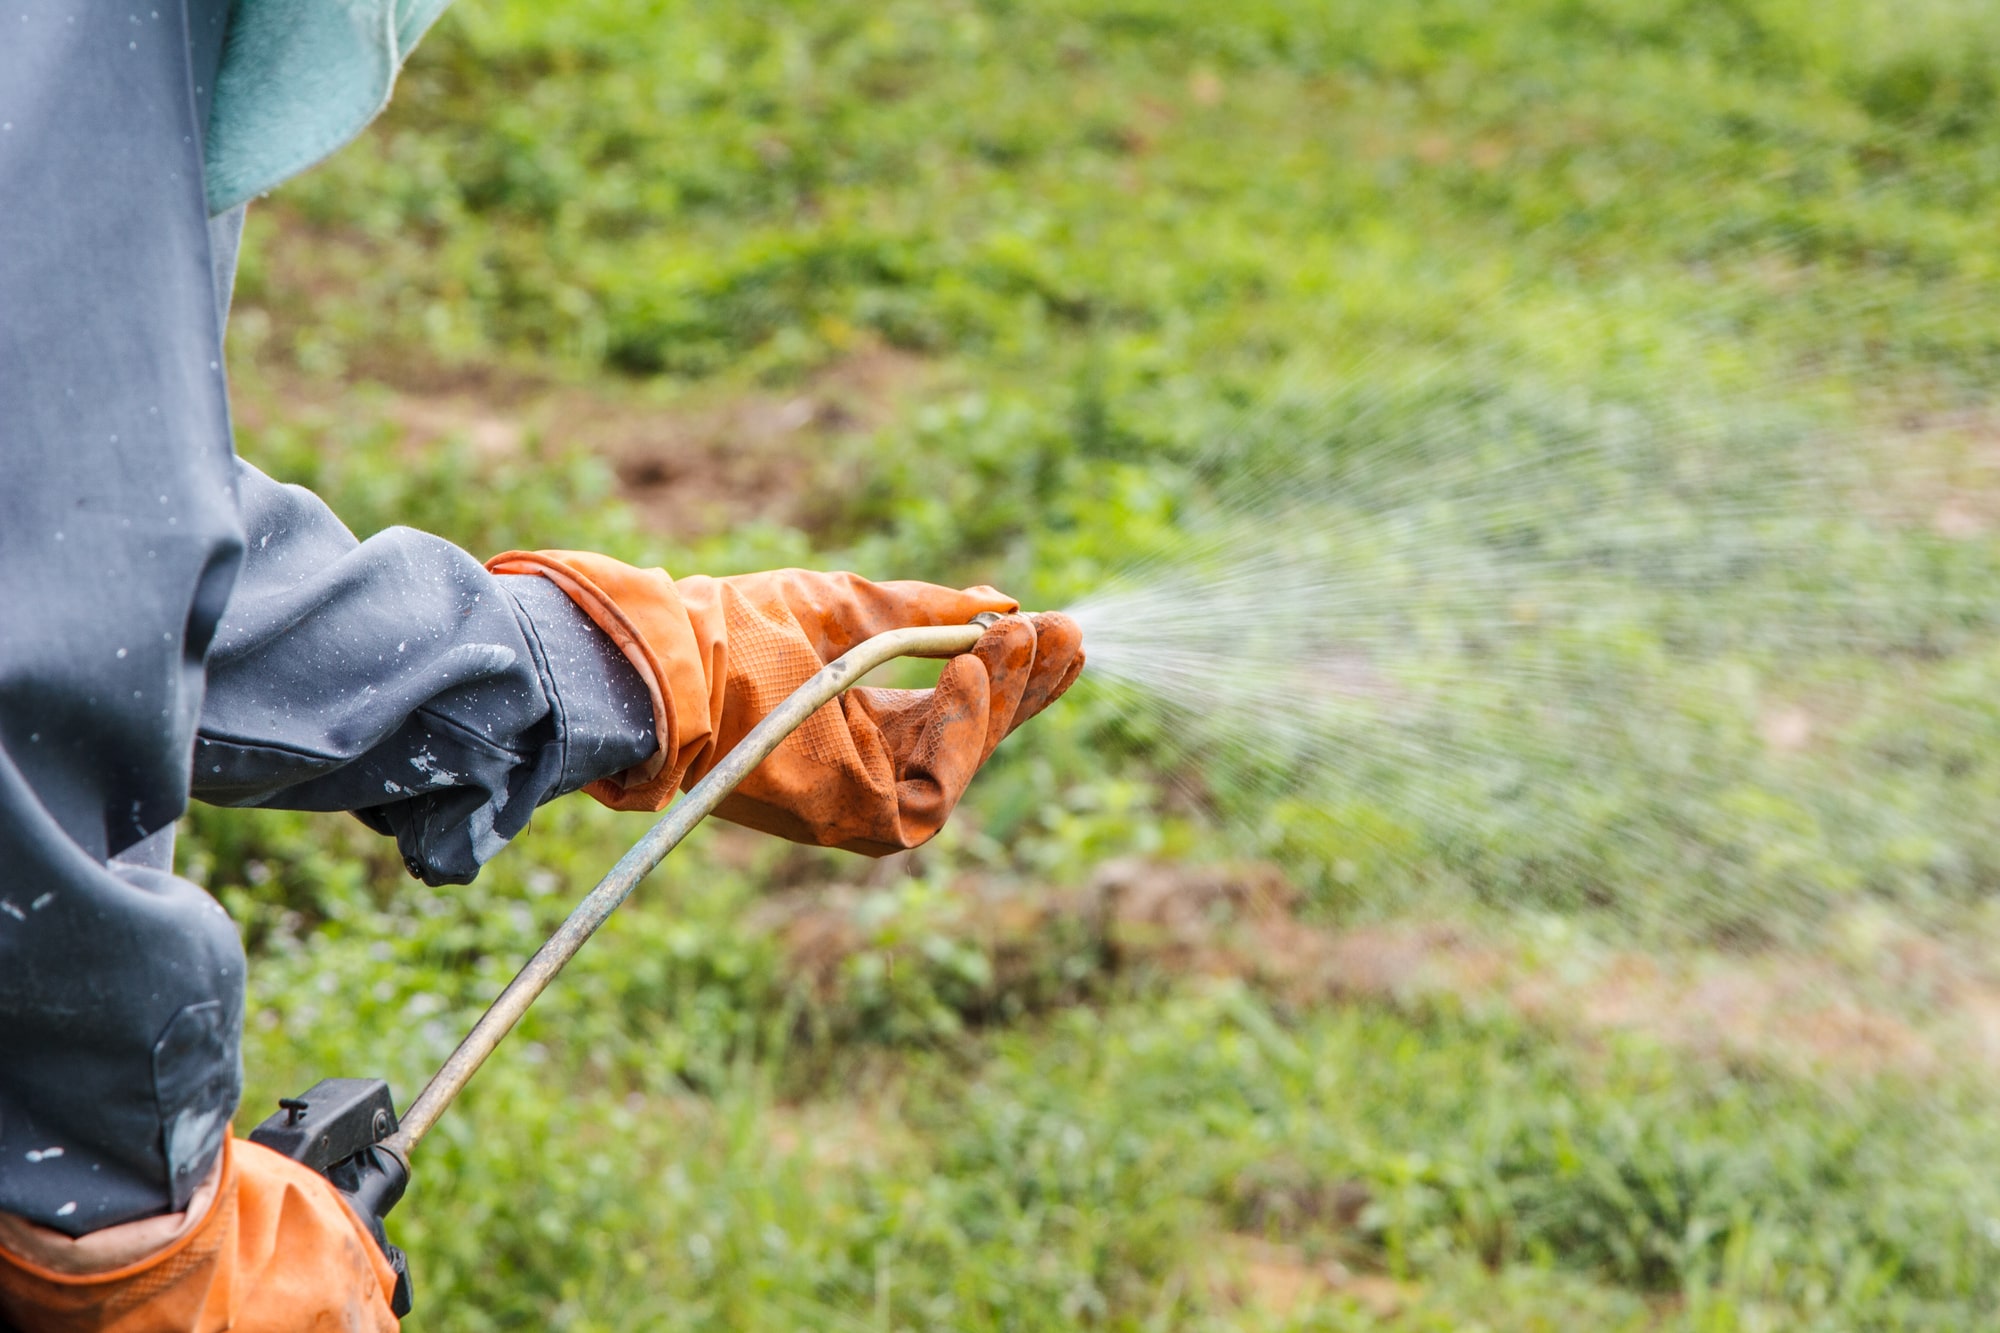 Gardener spraying pesticides on crops